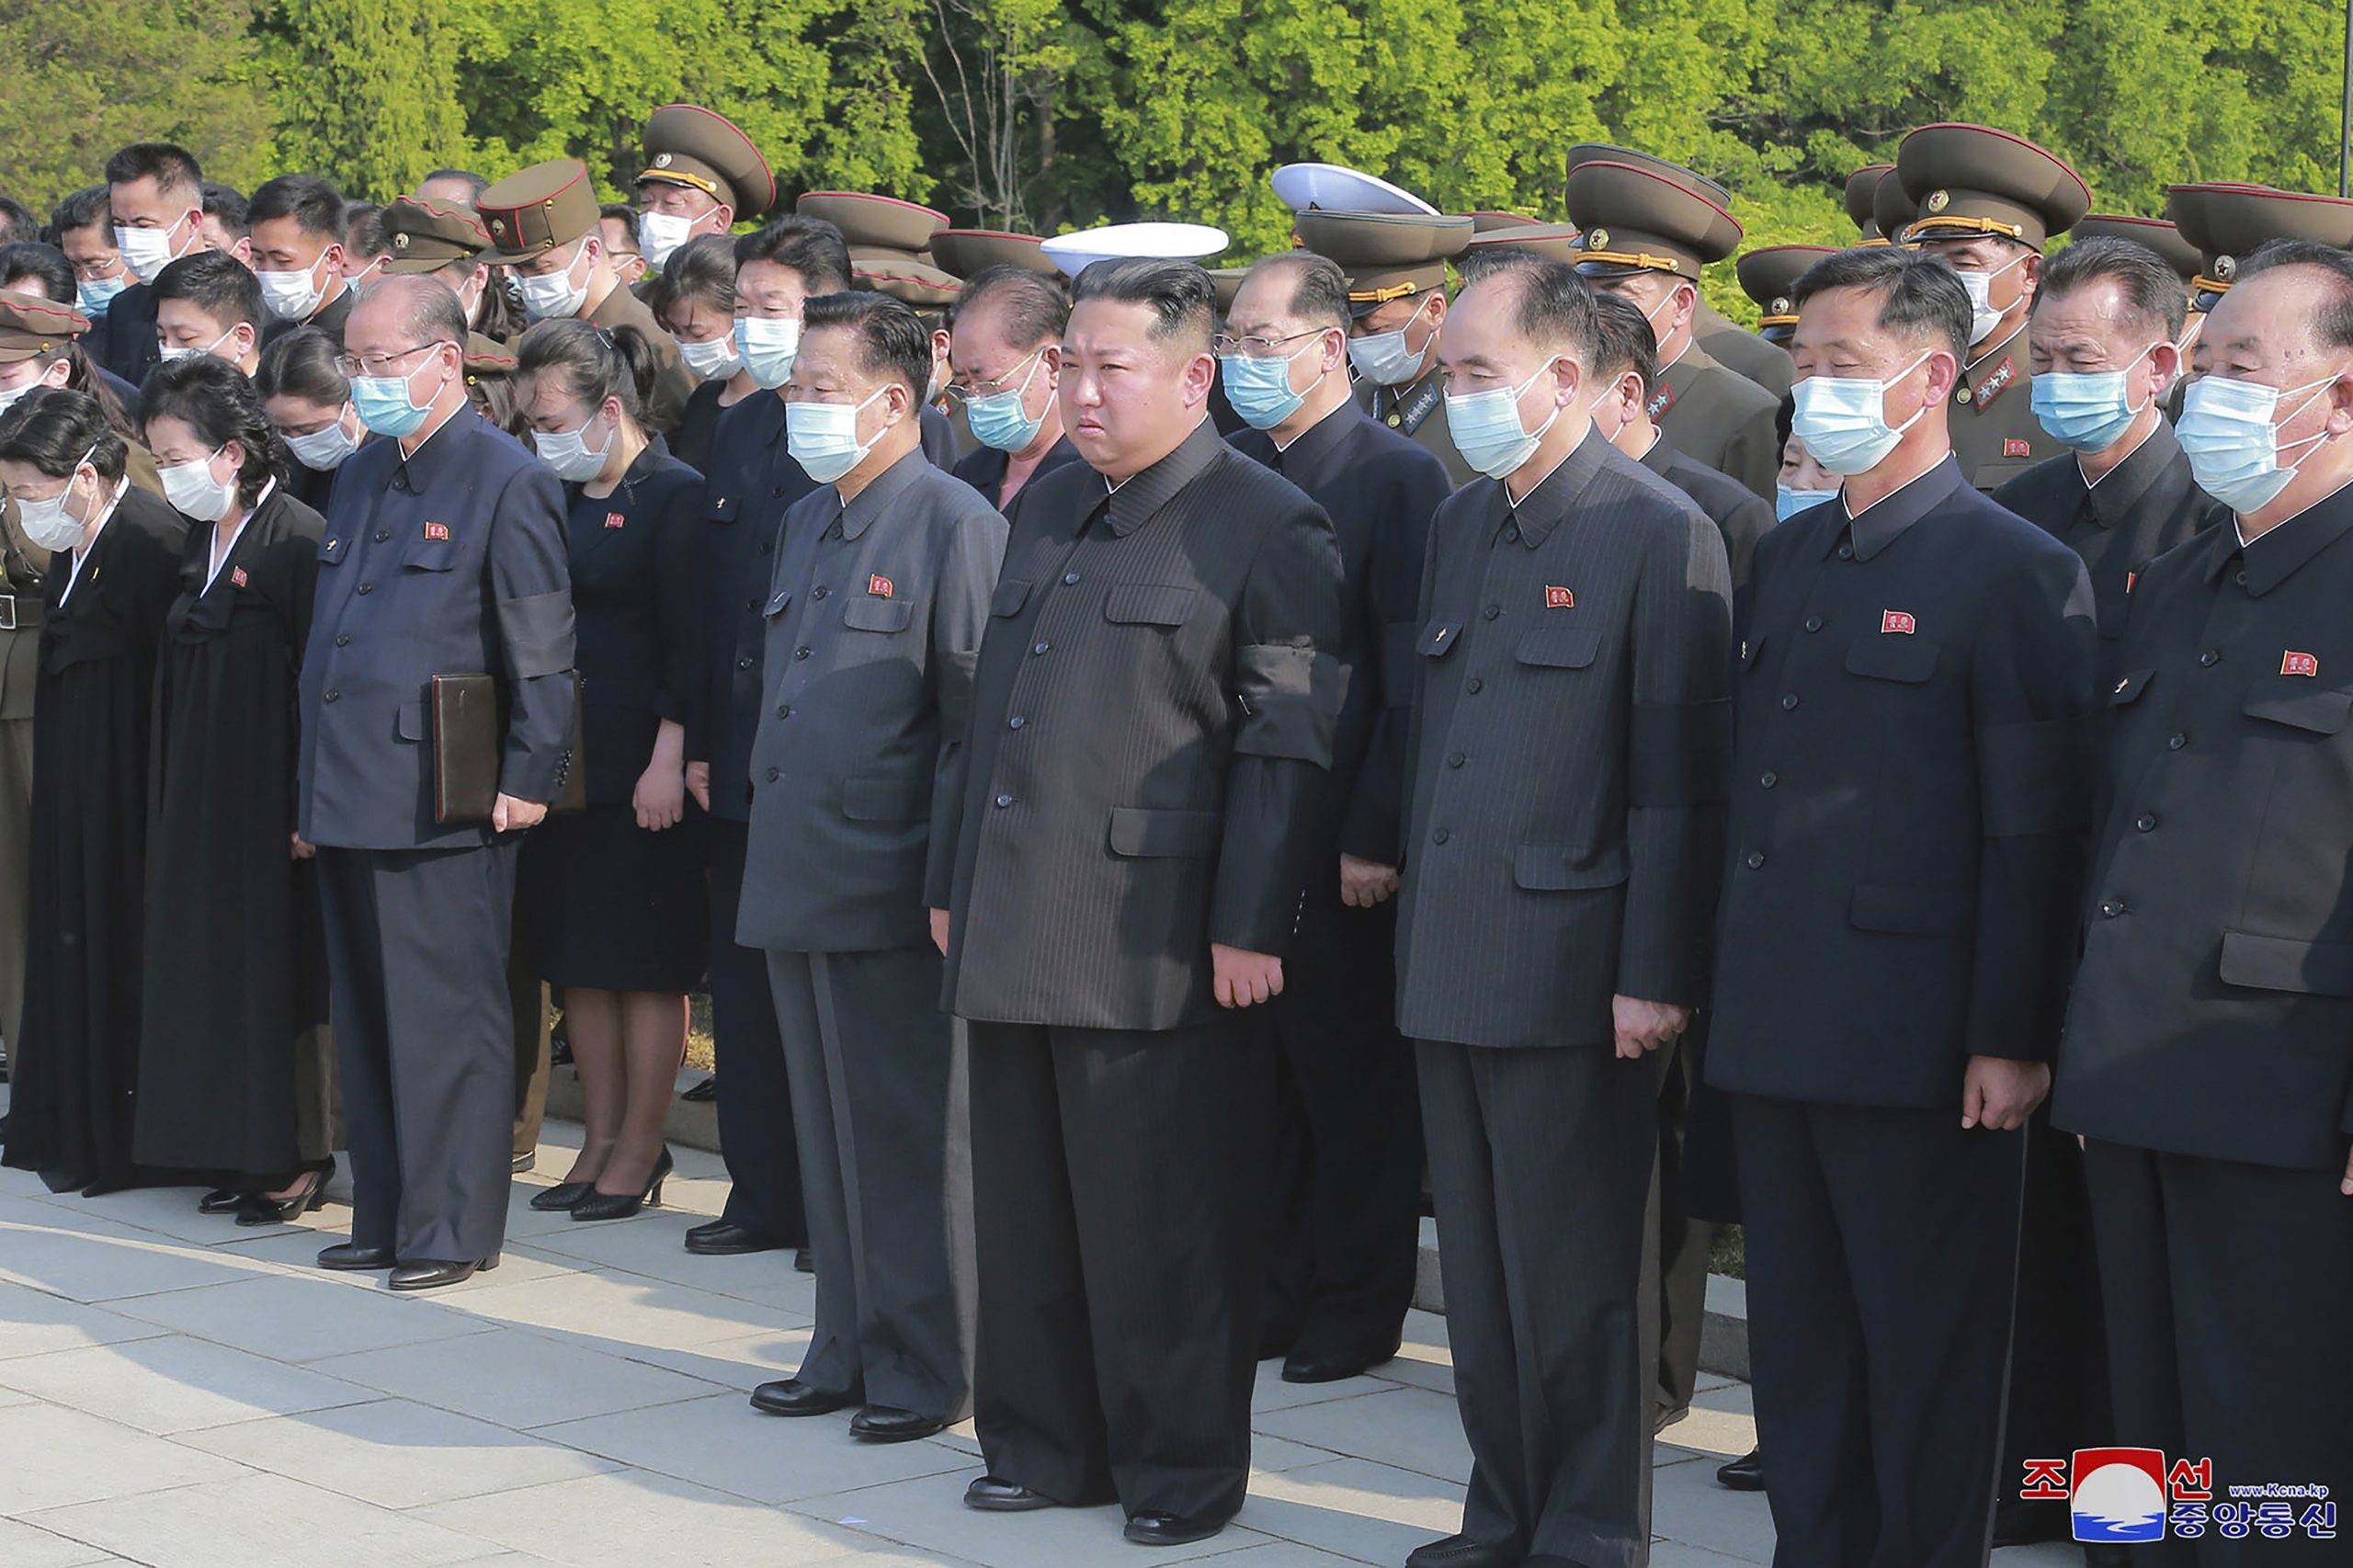 金正恩出席朝鲜元帅葬礼 亲自抬棺罕见落泪